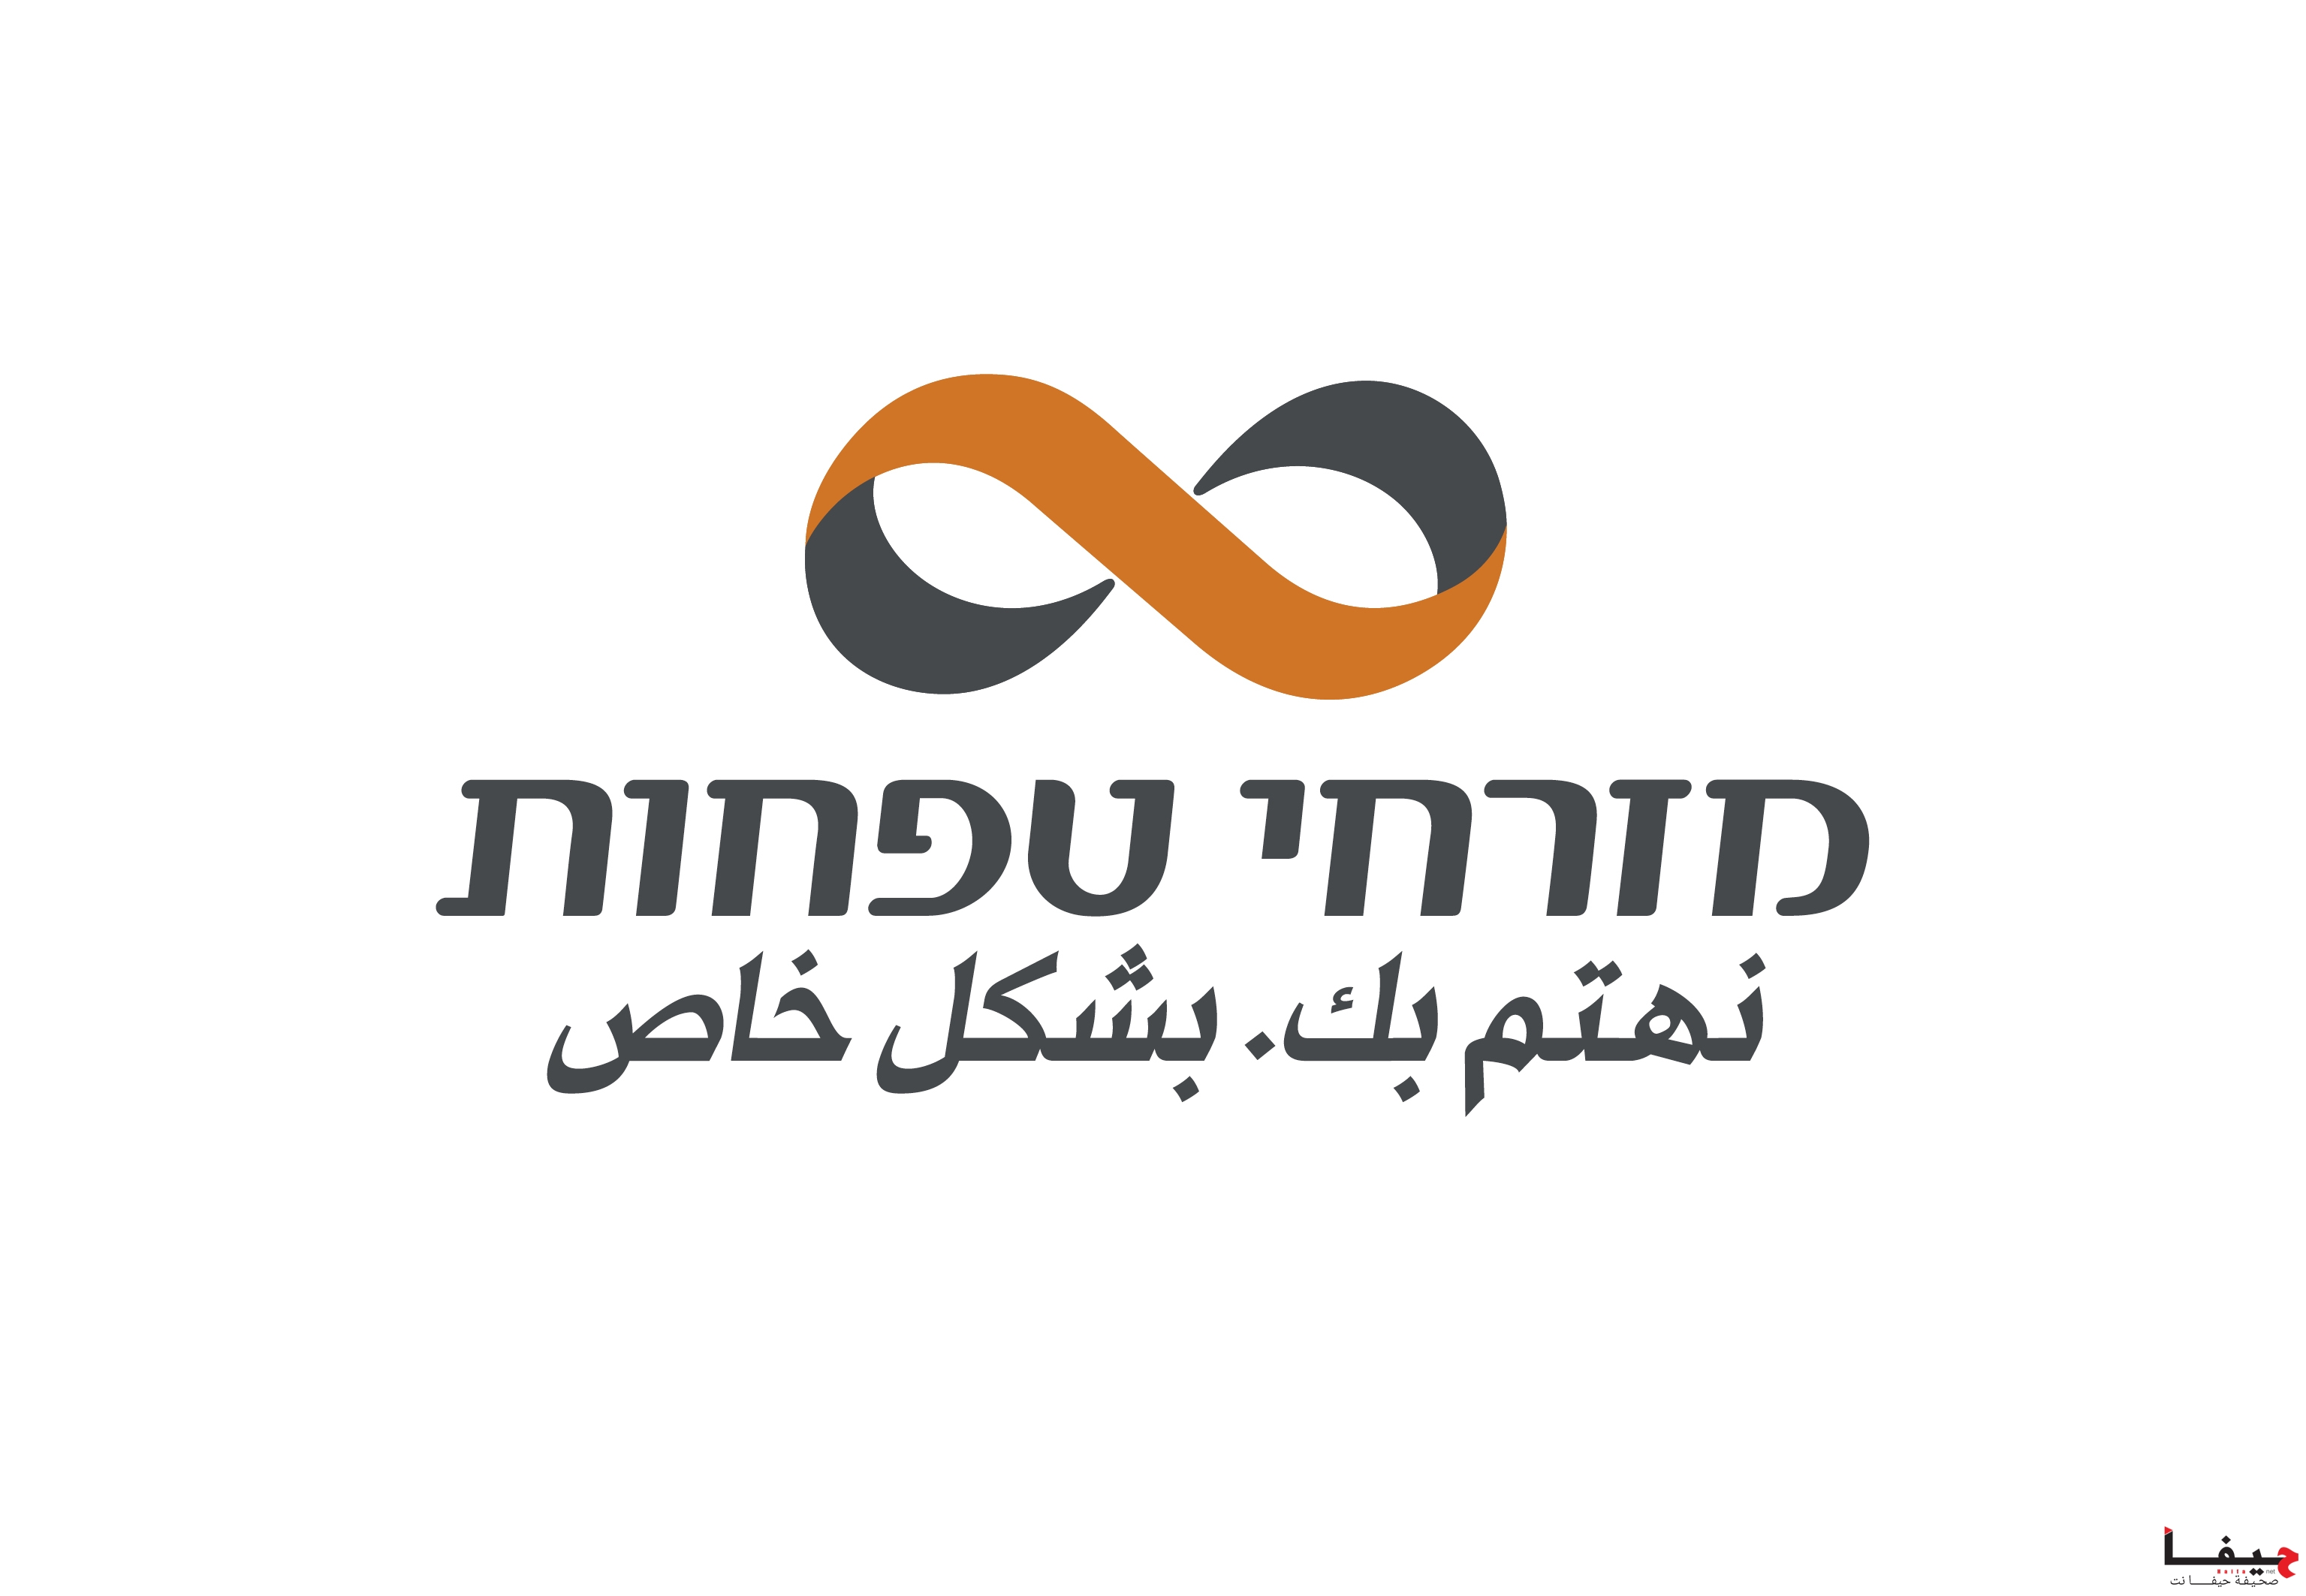 MZR_logo (1)